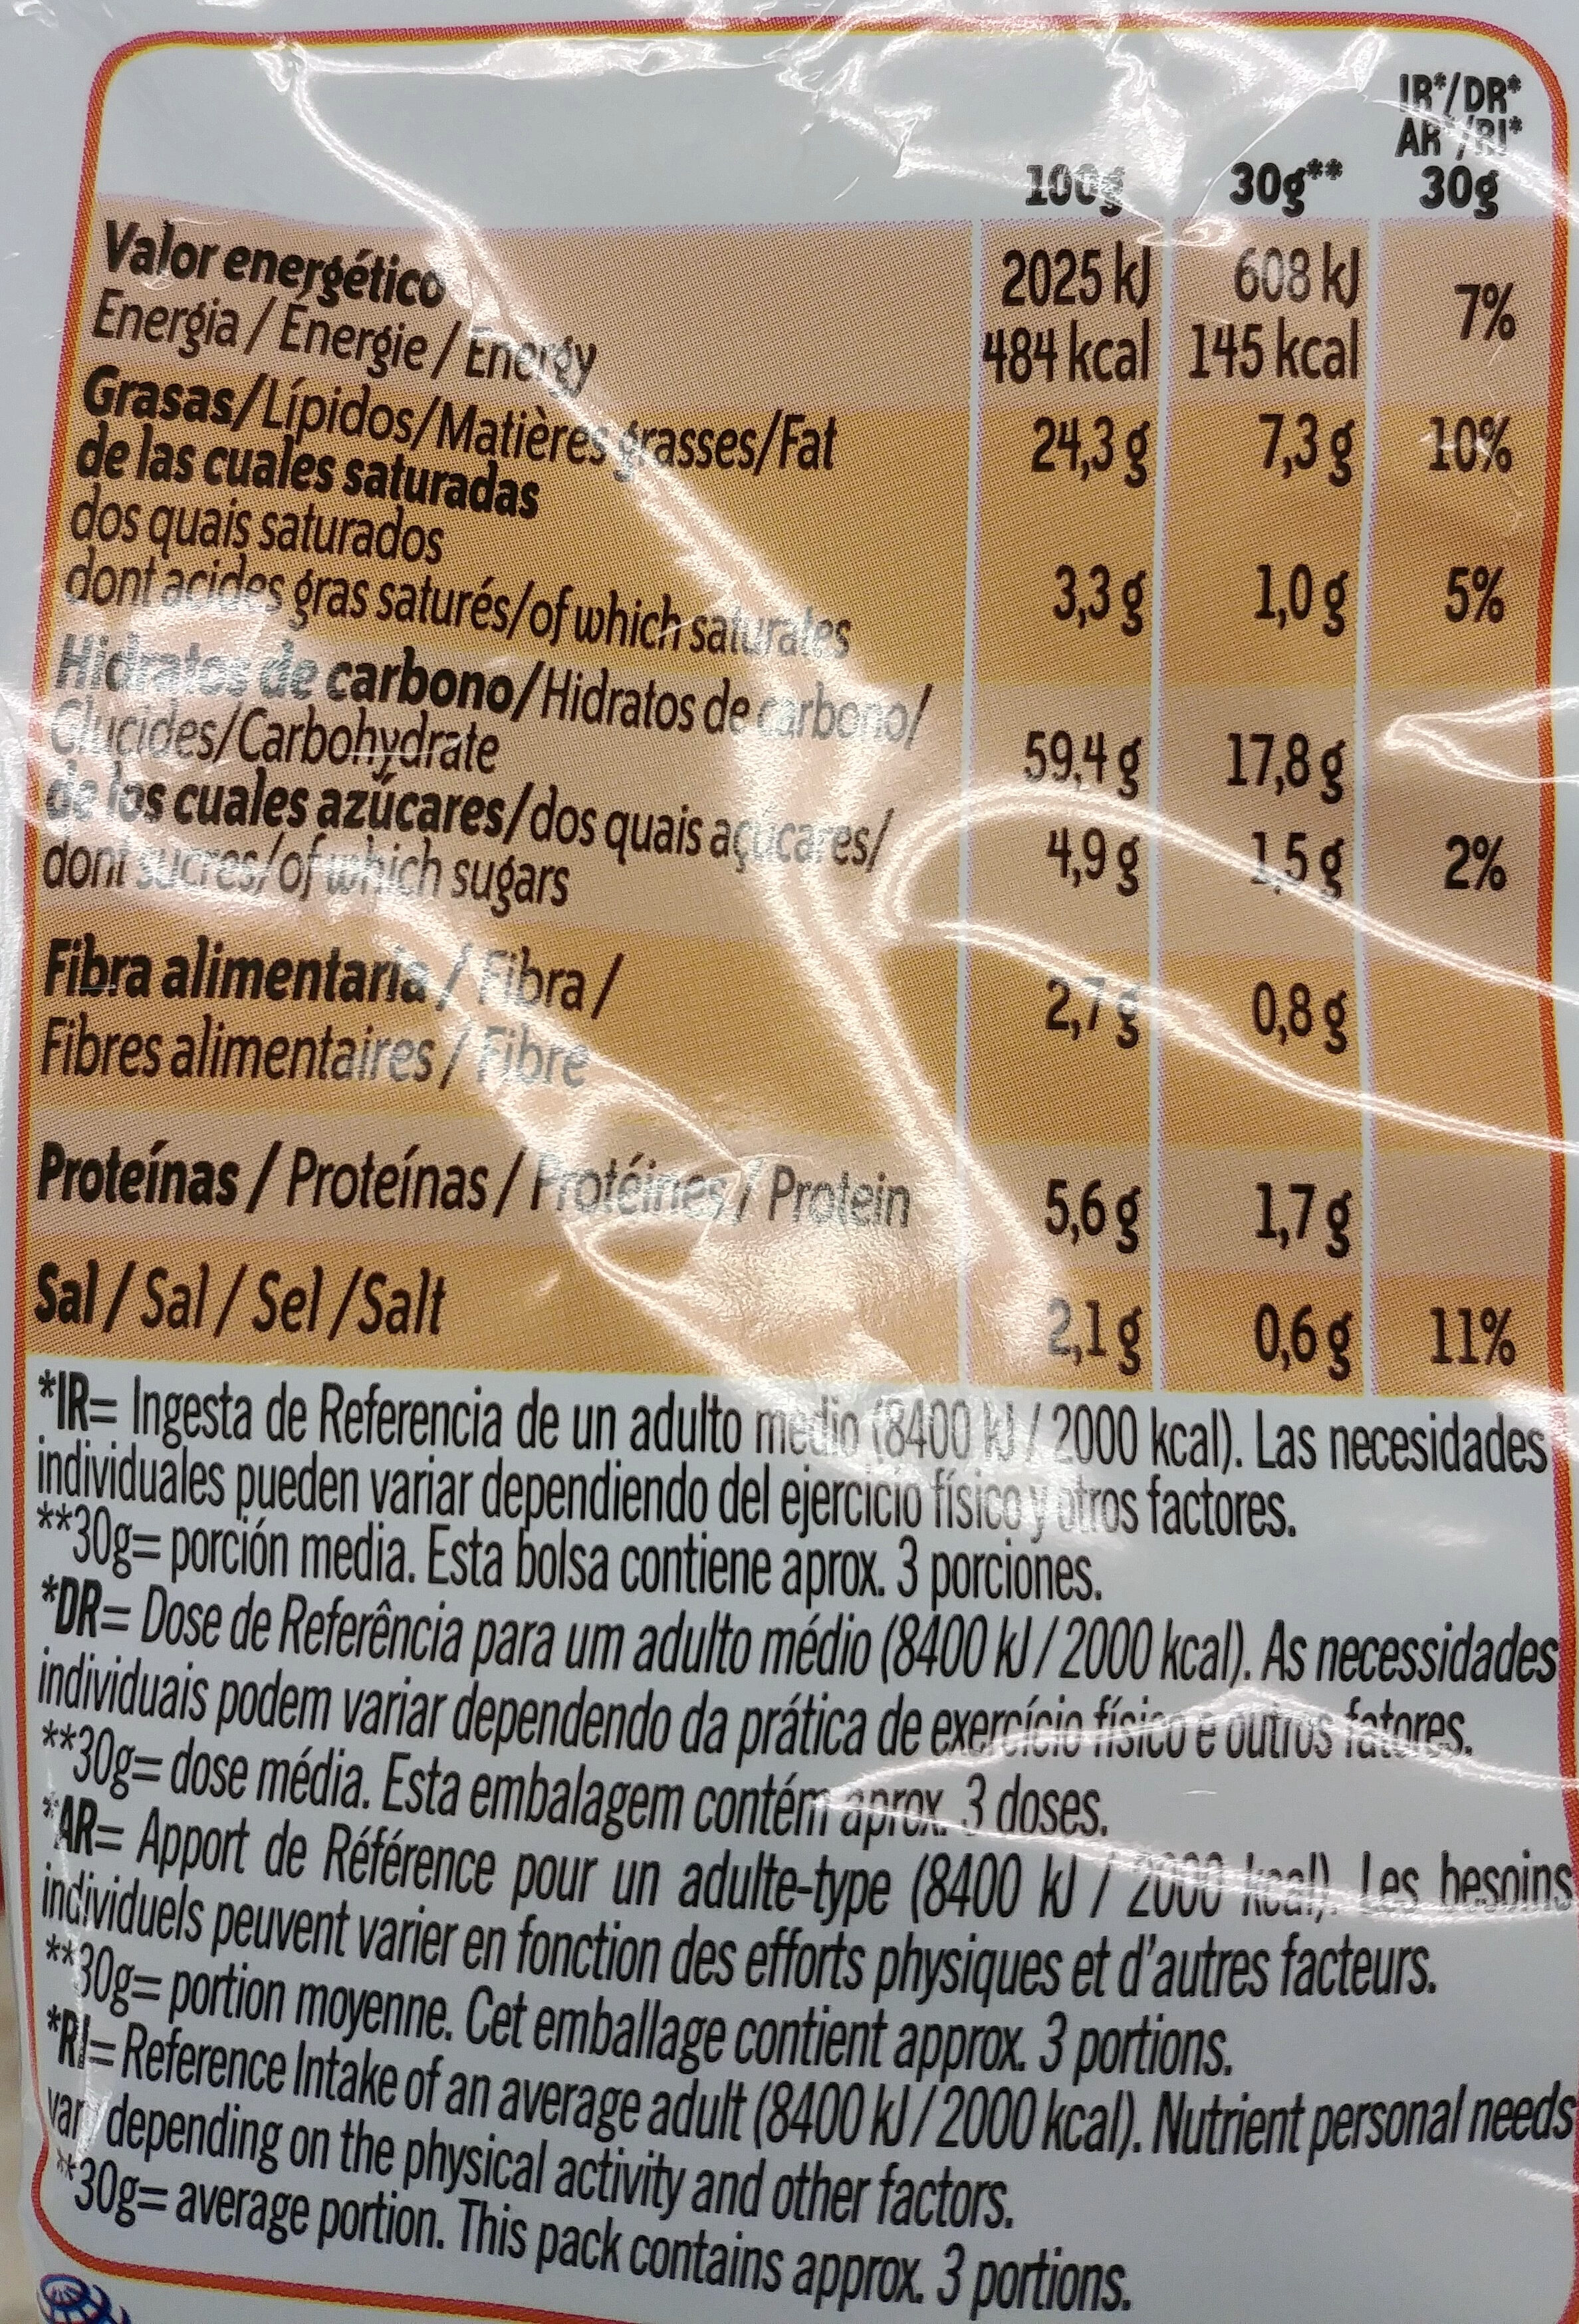 Snack rizos sabor a queso - Información nutricional